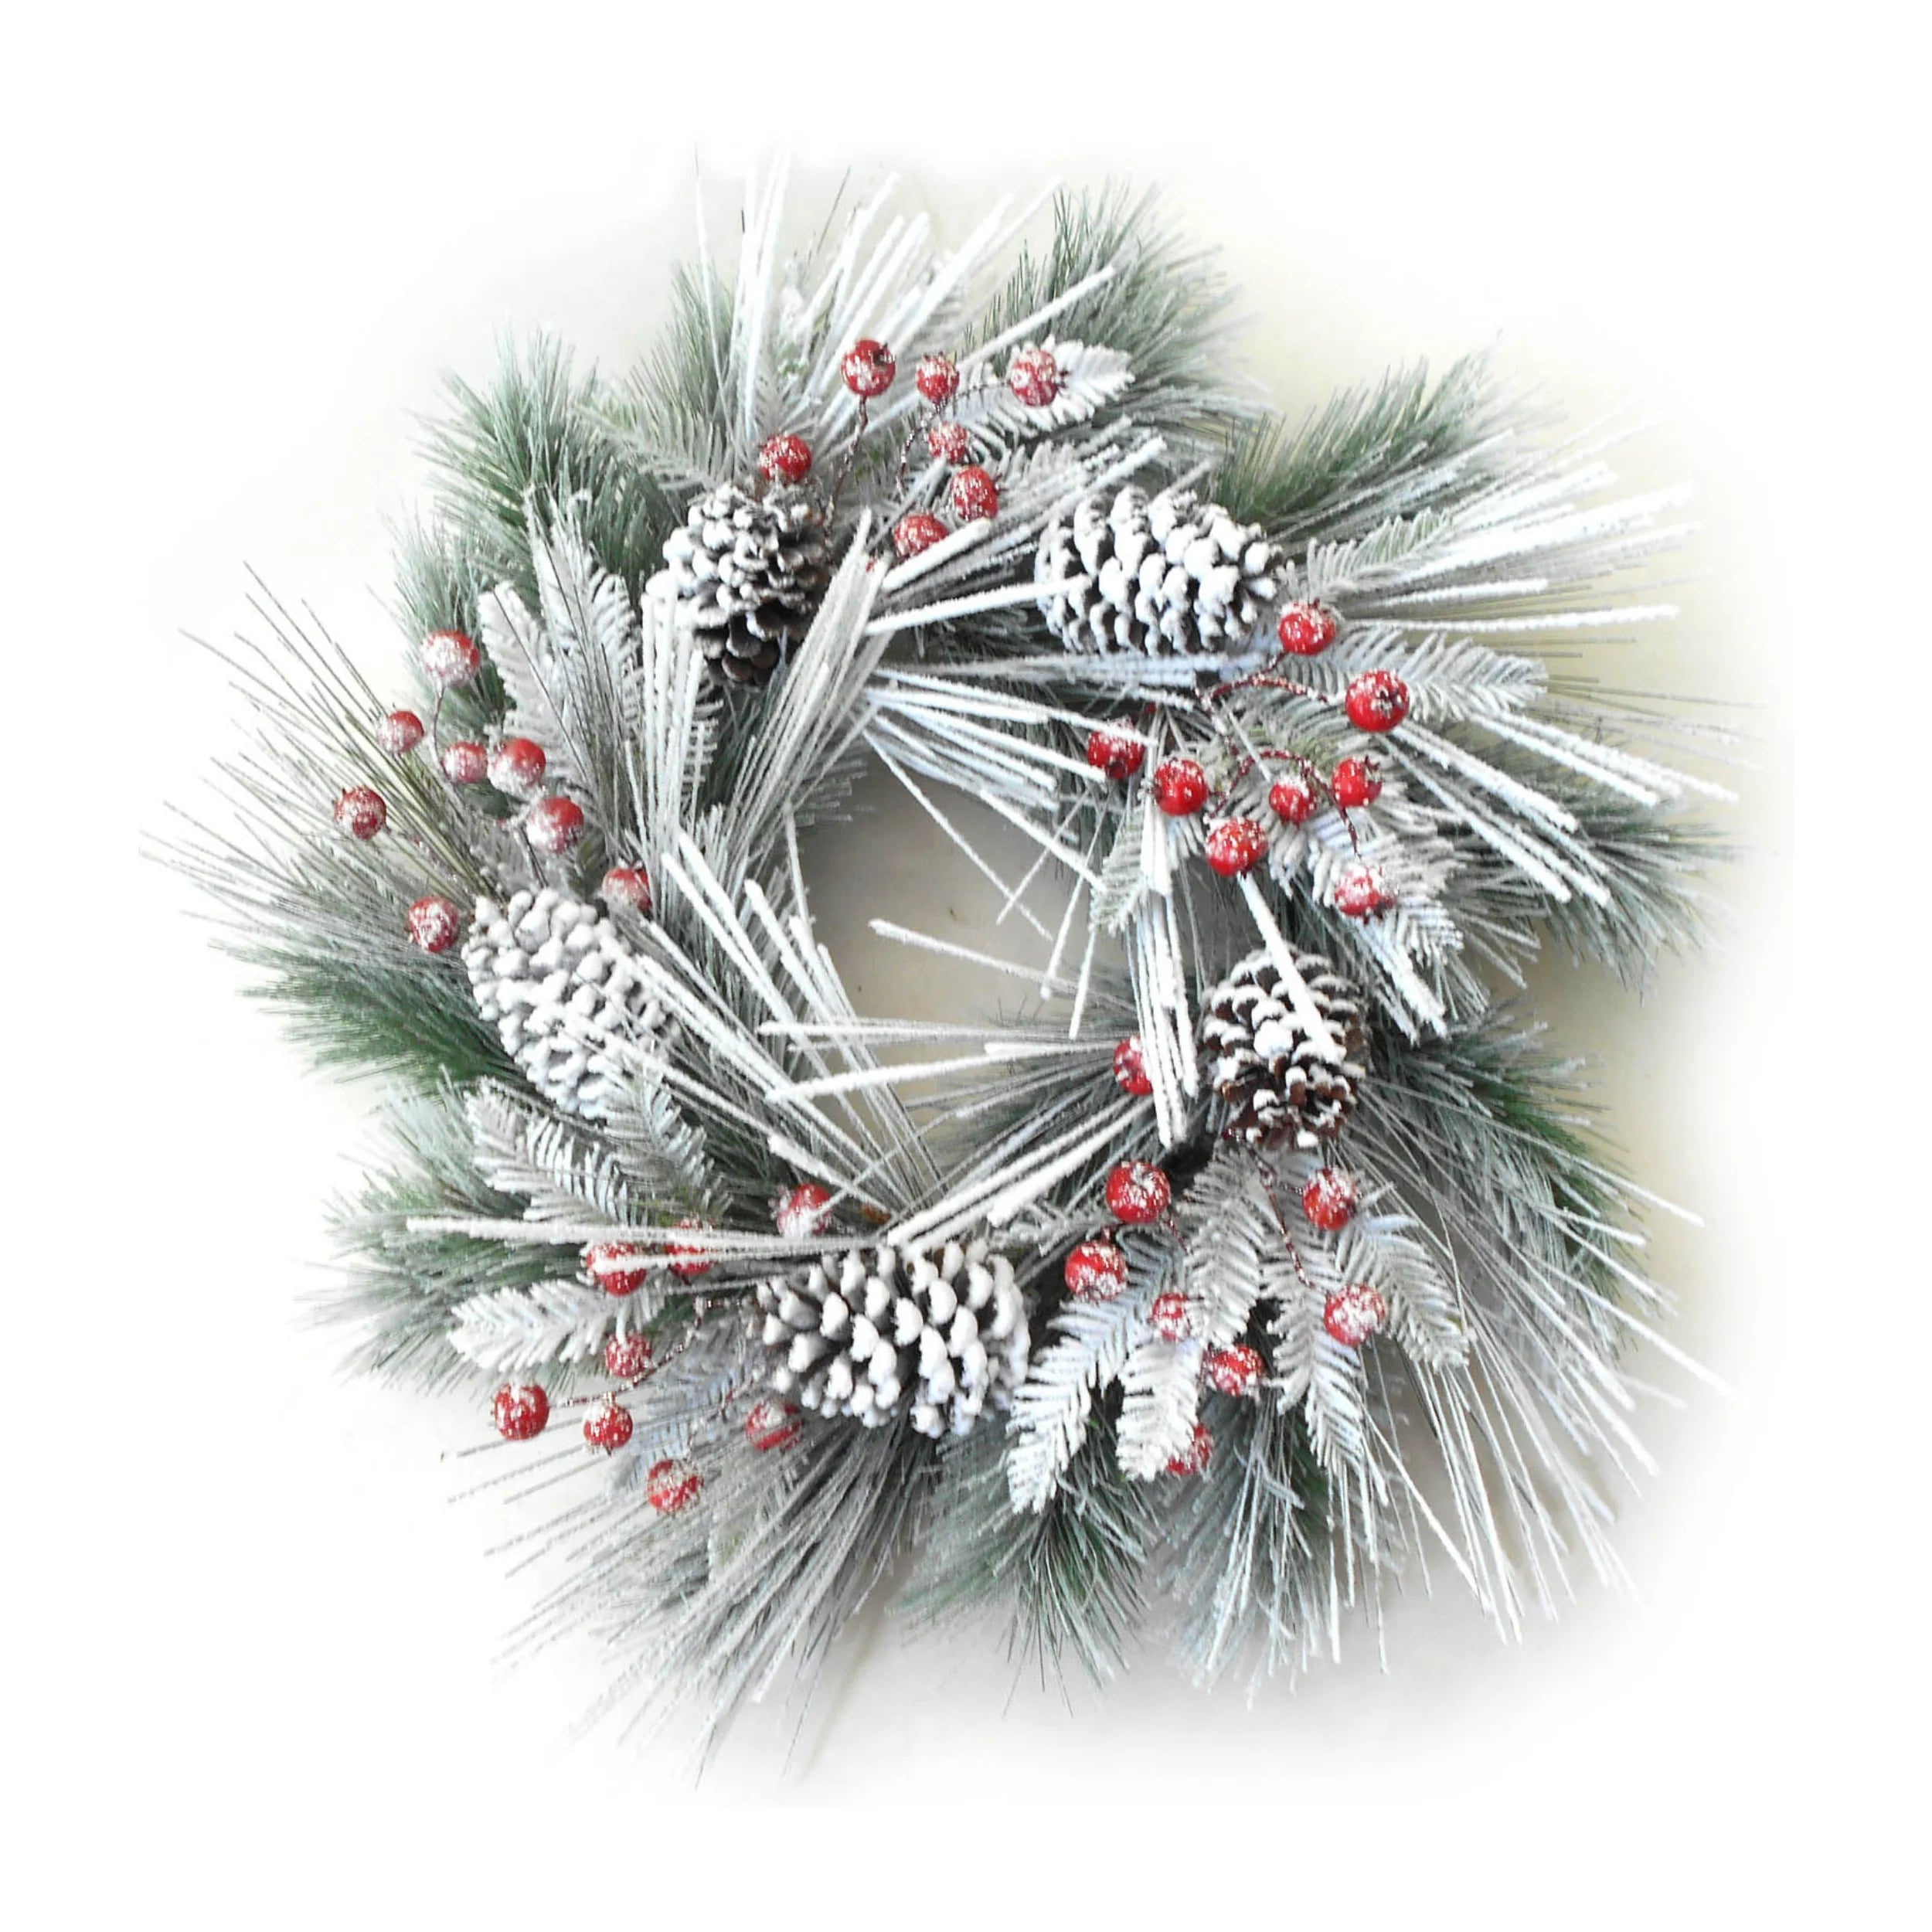 Snow Pine Wreath - 24" Wide - 19 Tips, Berries, & Pine Cones (Set of 8)